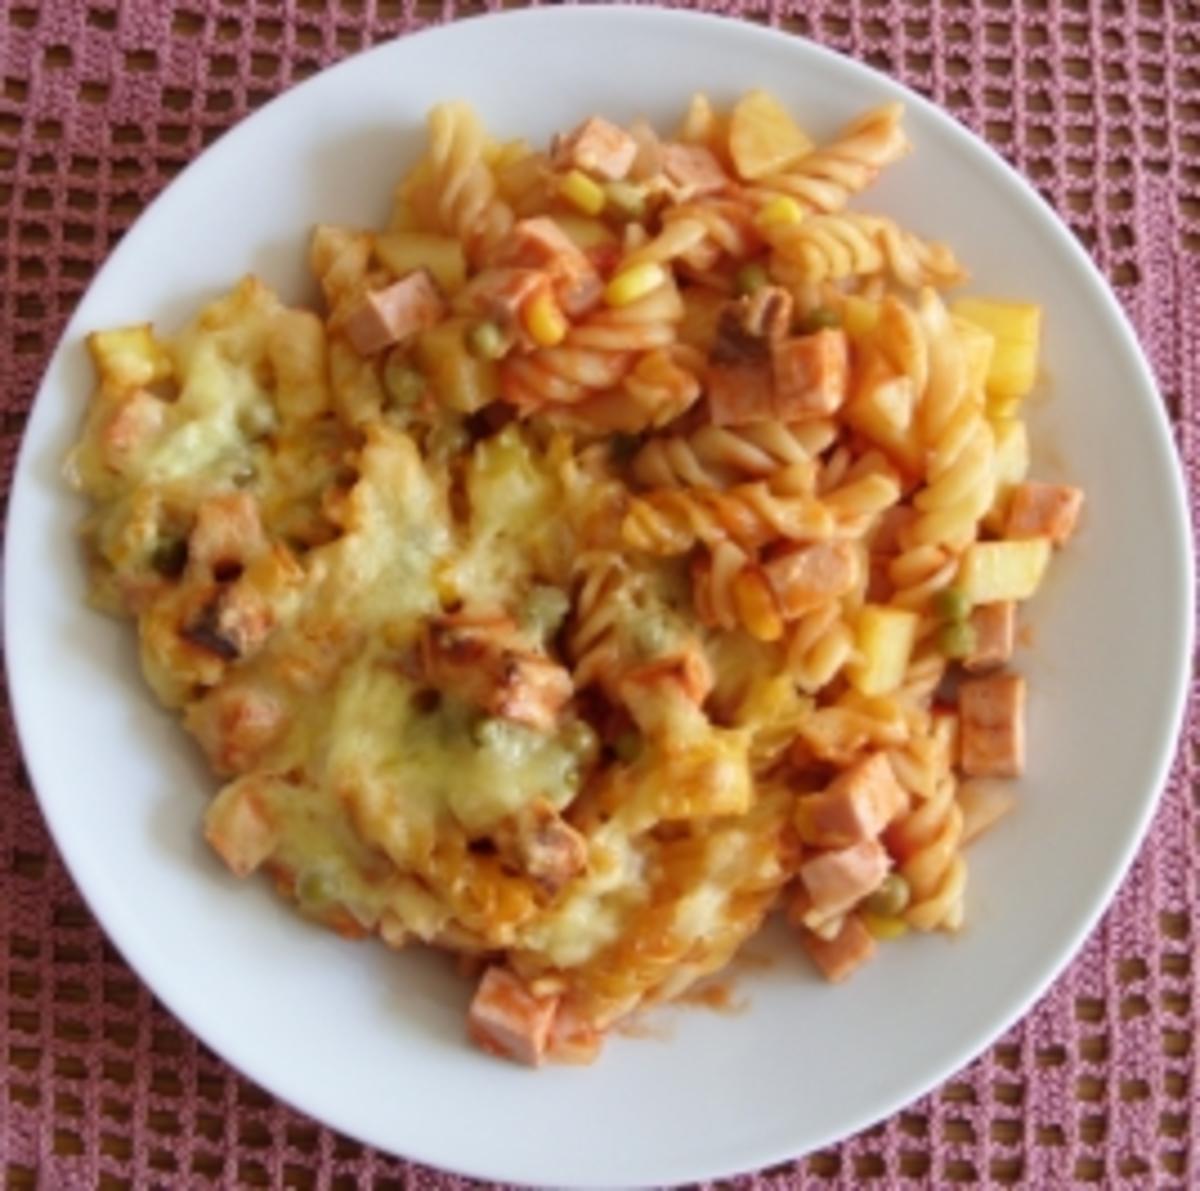 Auflauf herzhaft - Nudel-Kartoffel-Auflauf mit Leberkäse und Gemüse - Rezept - Bild Nr. 5